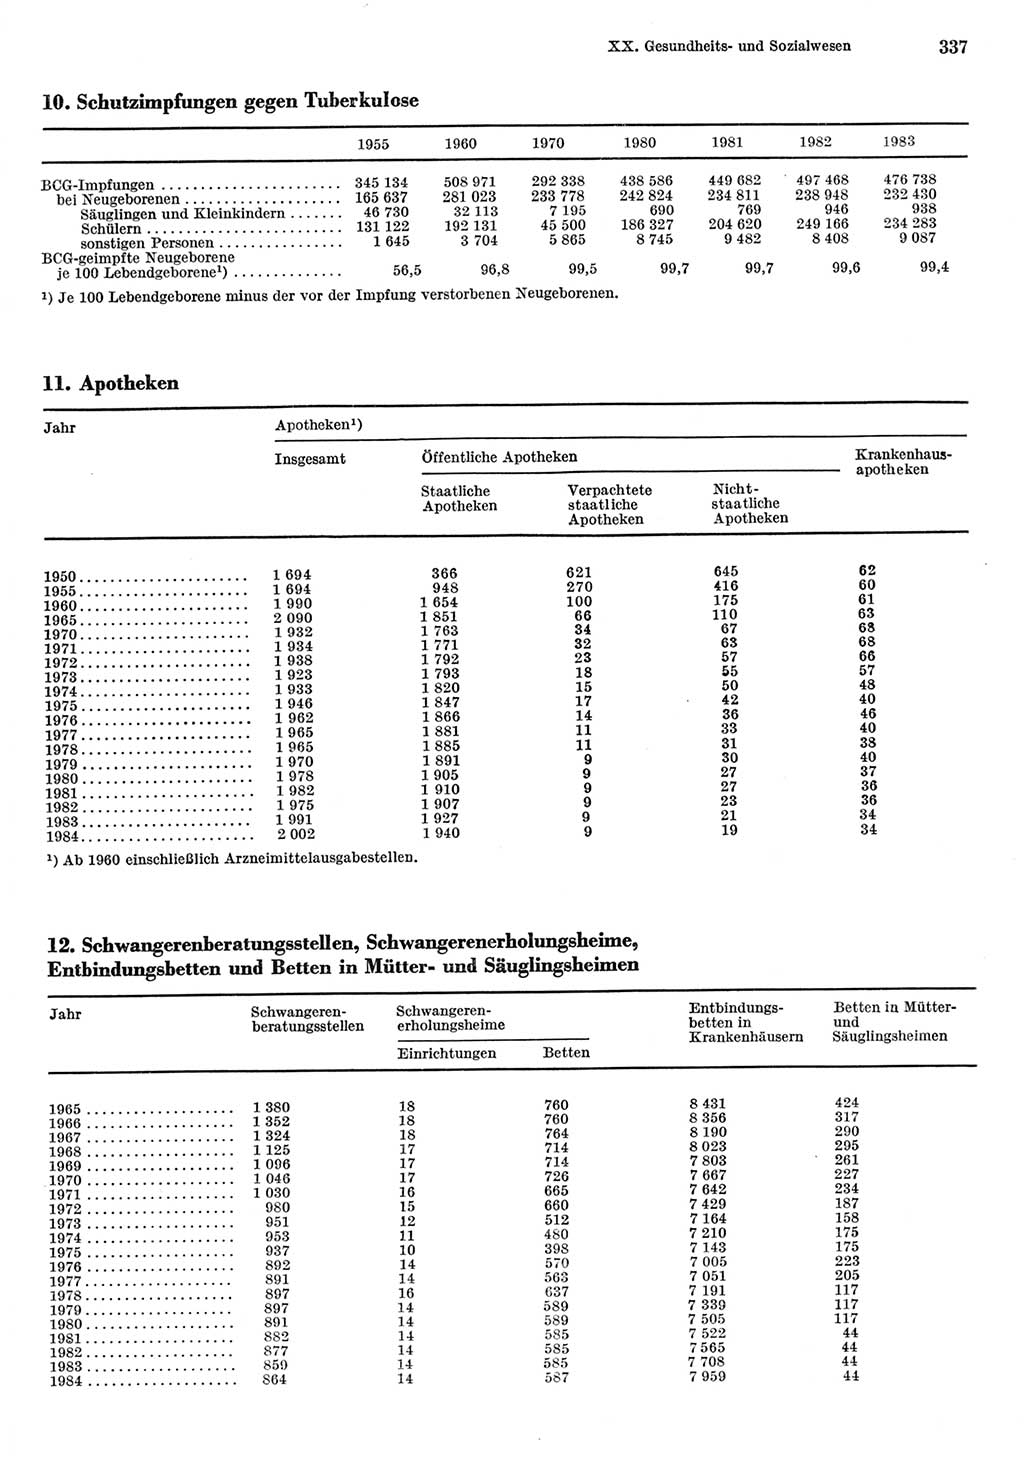 Statistisches Jahrbuch der Deutschen Demokratischen Republik (DDR) 1985, Seite 337 (Stat. Jb. DDR 1985, S. 337)